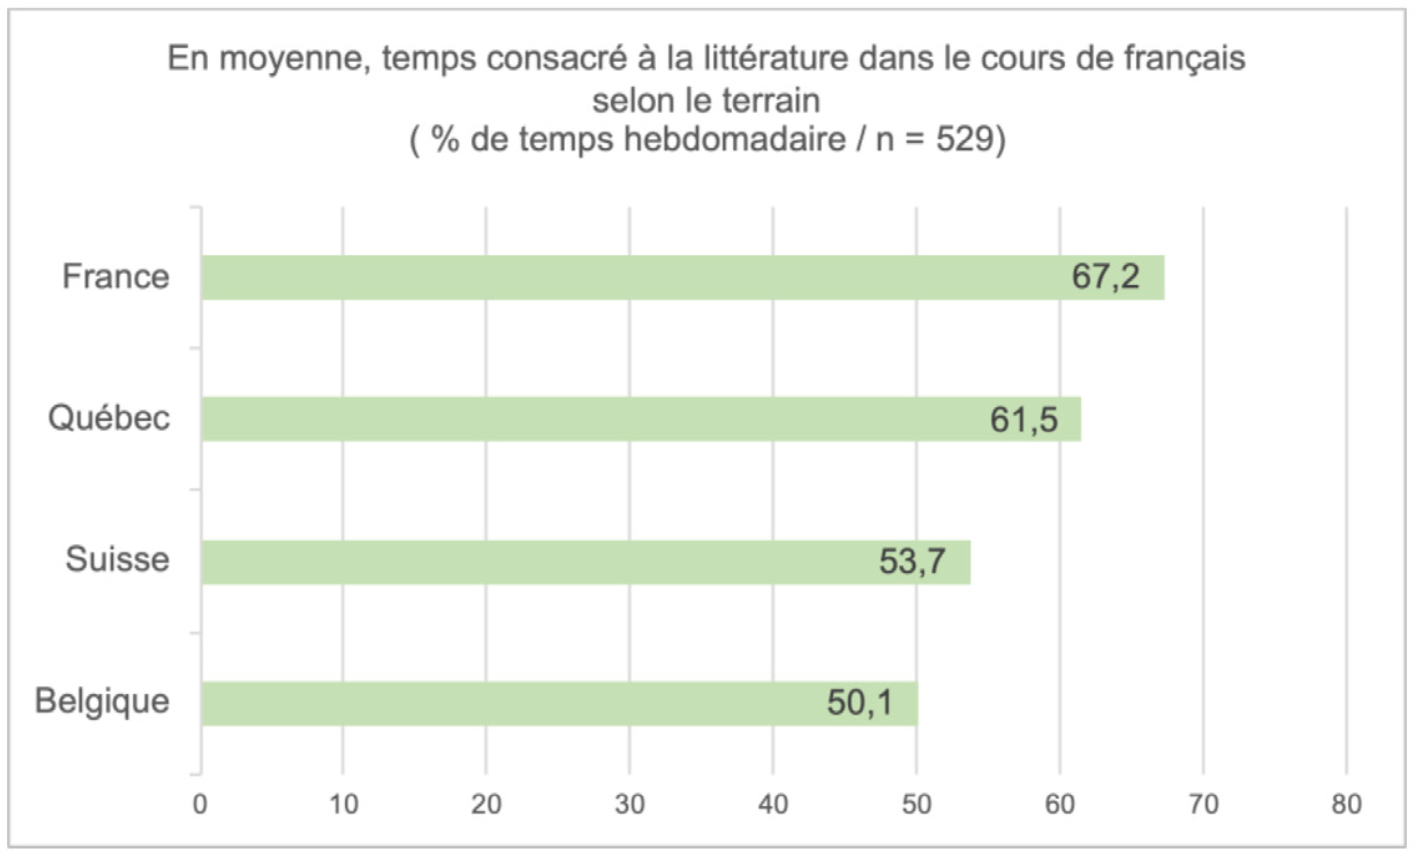 <strong>Figure 4.</strong> Temps consacré en moyenne à la littérature dans le cours de français, selon le terrain (n=529 / % de temps hebdomadaire).